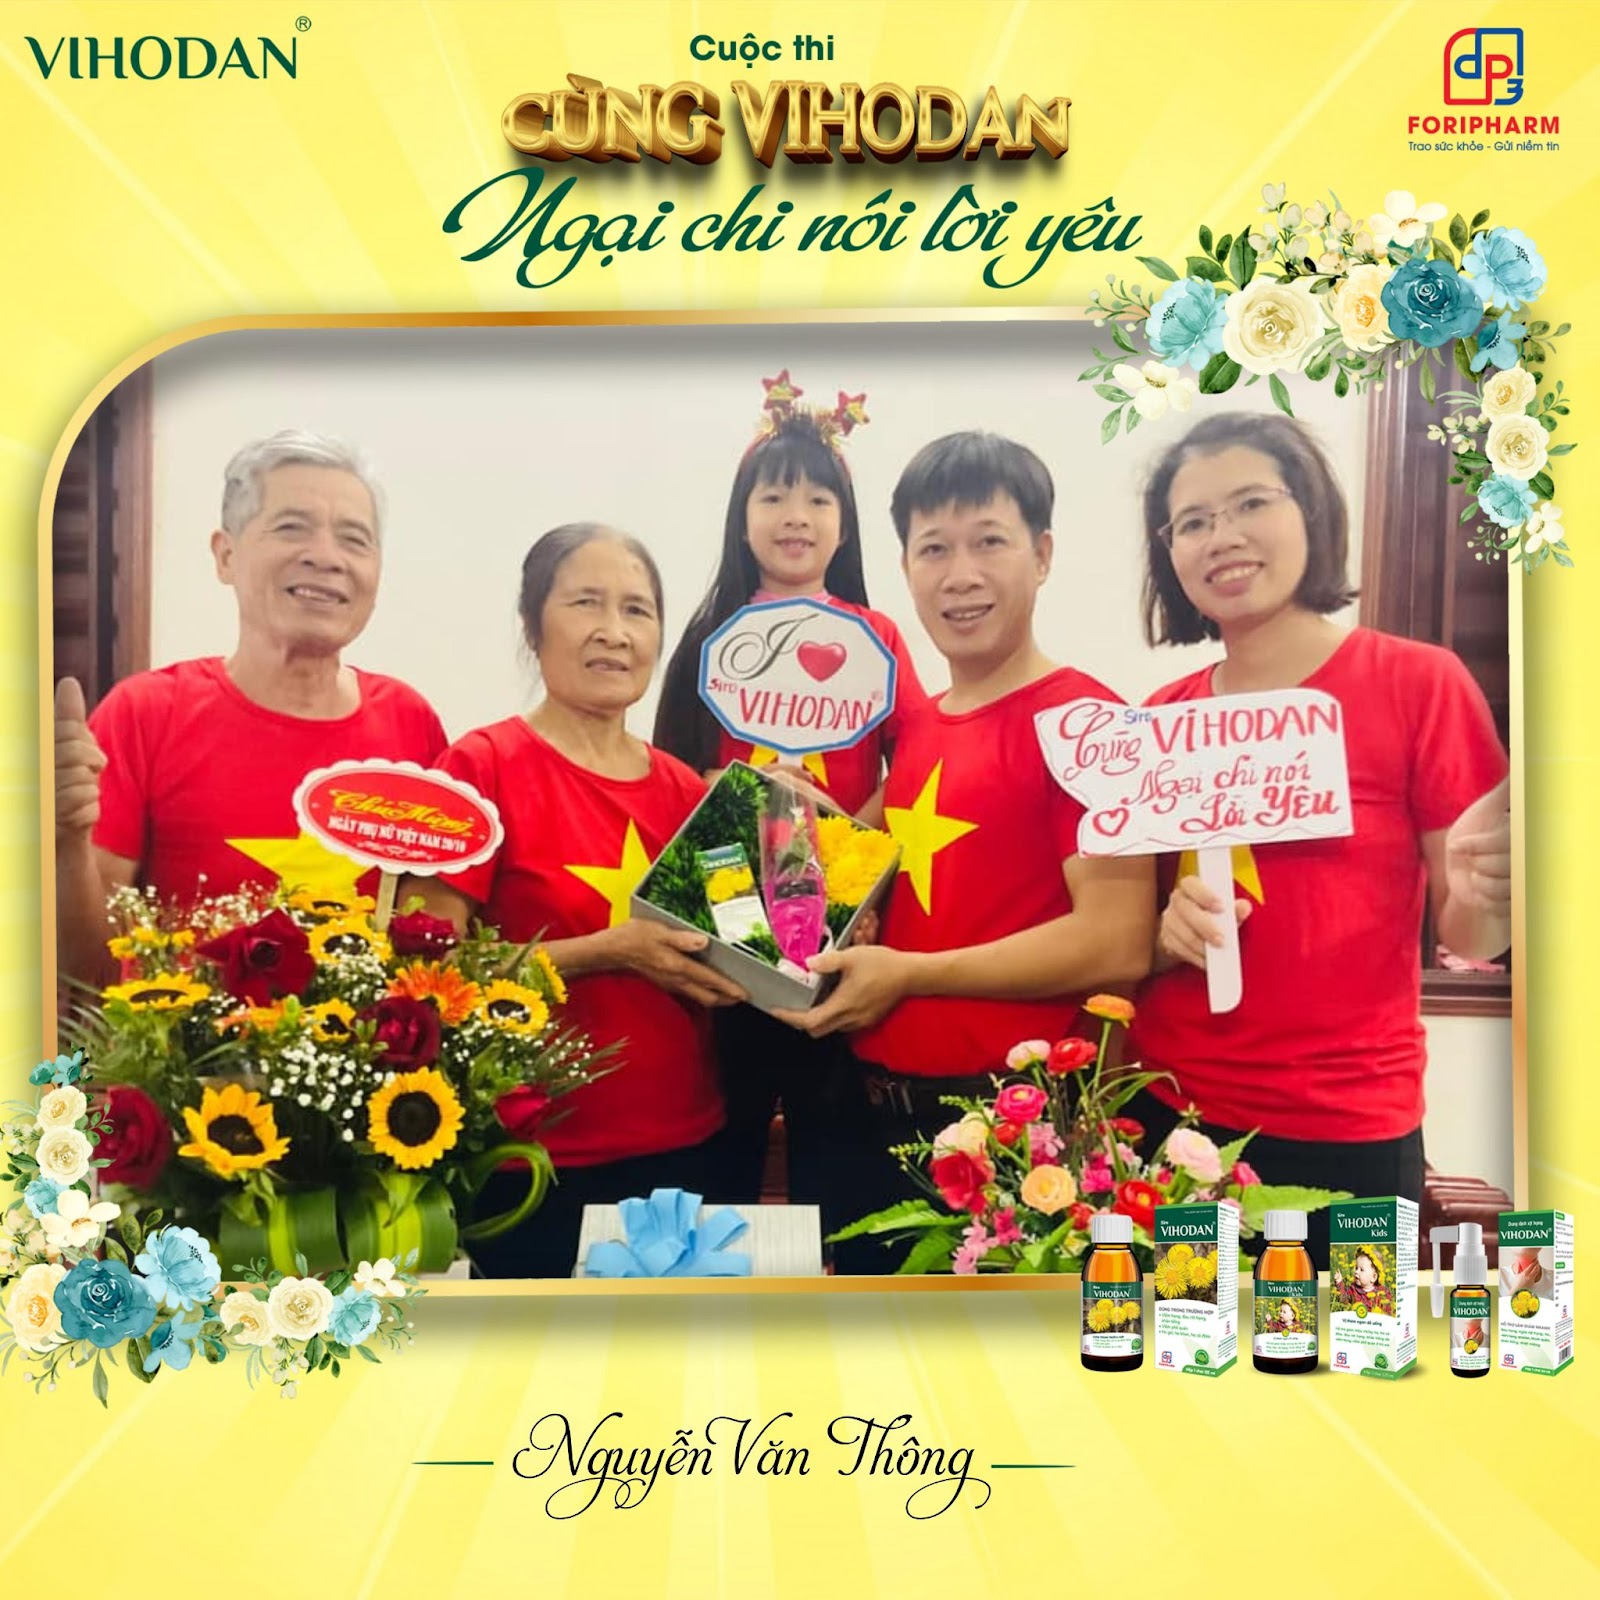 Gia đình anh Nguyễn Văn Thông